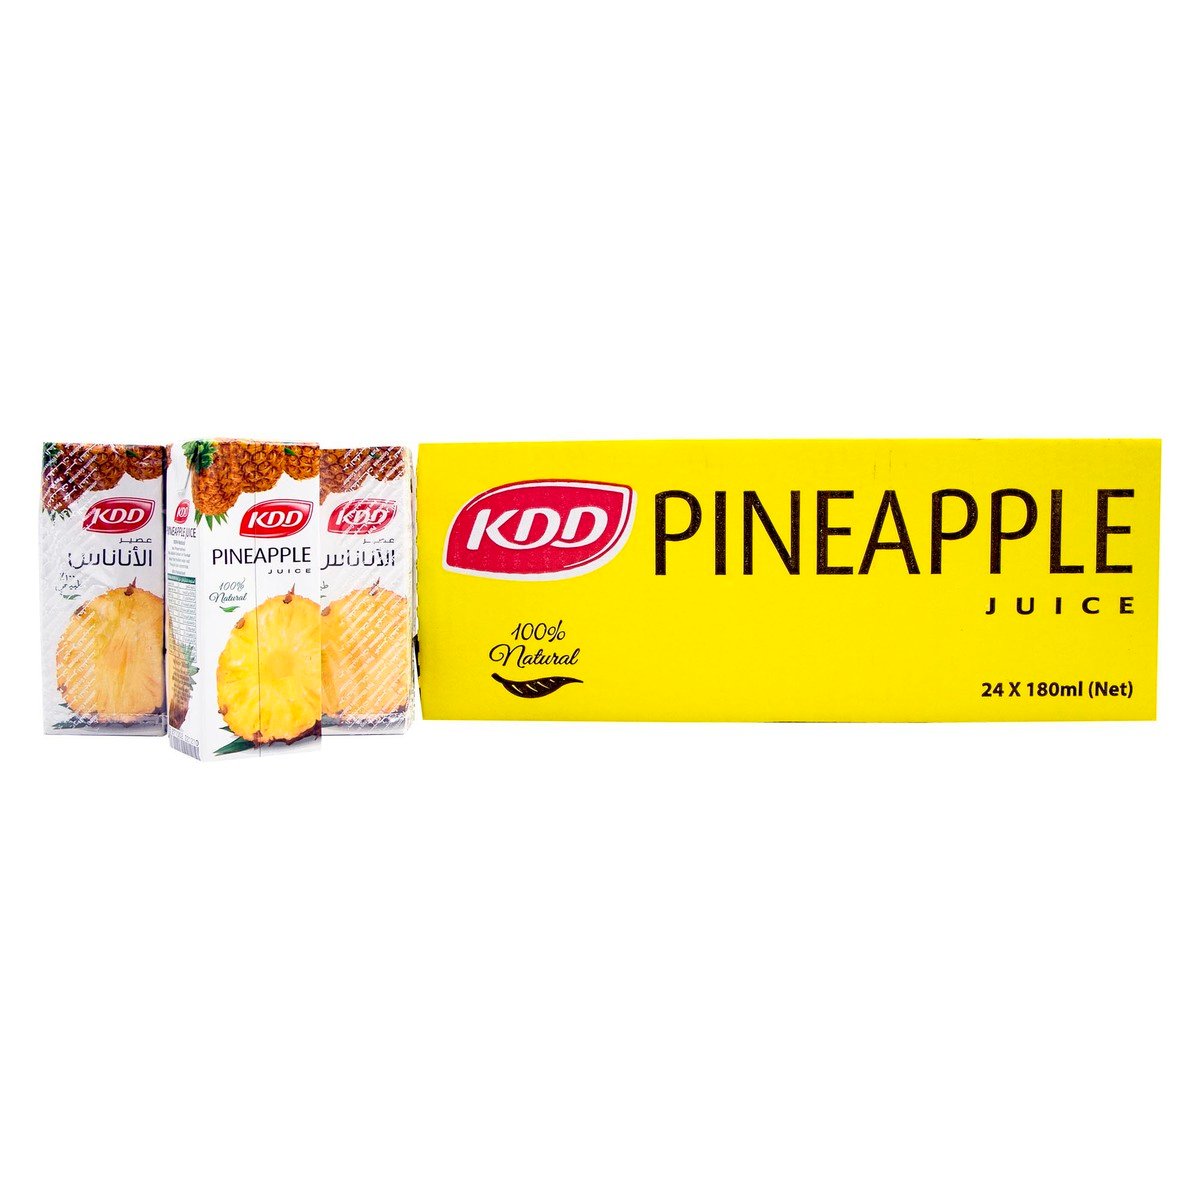 KDD Pineapple Juice 24 x 180ml